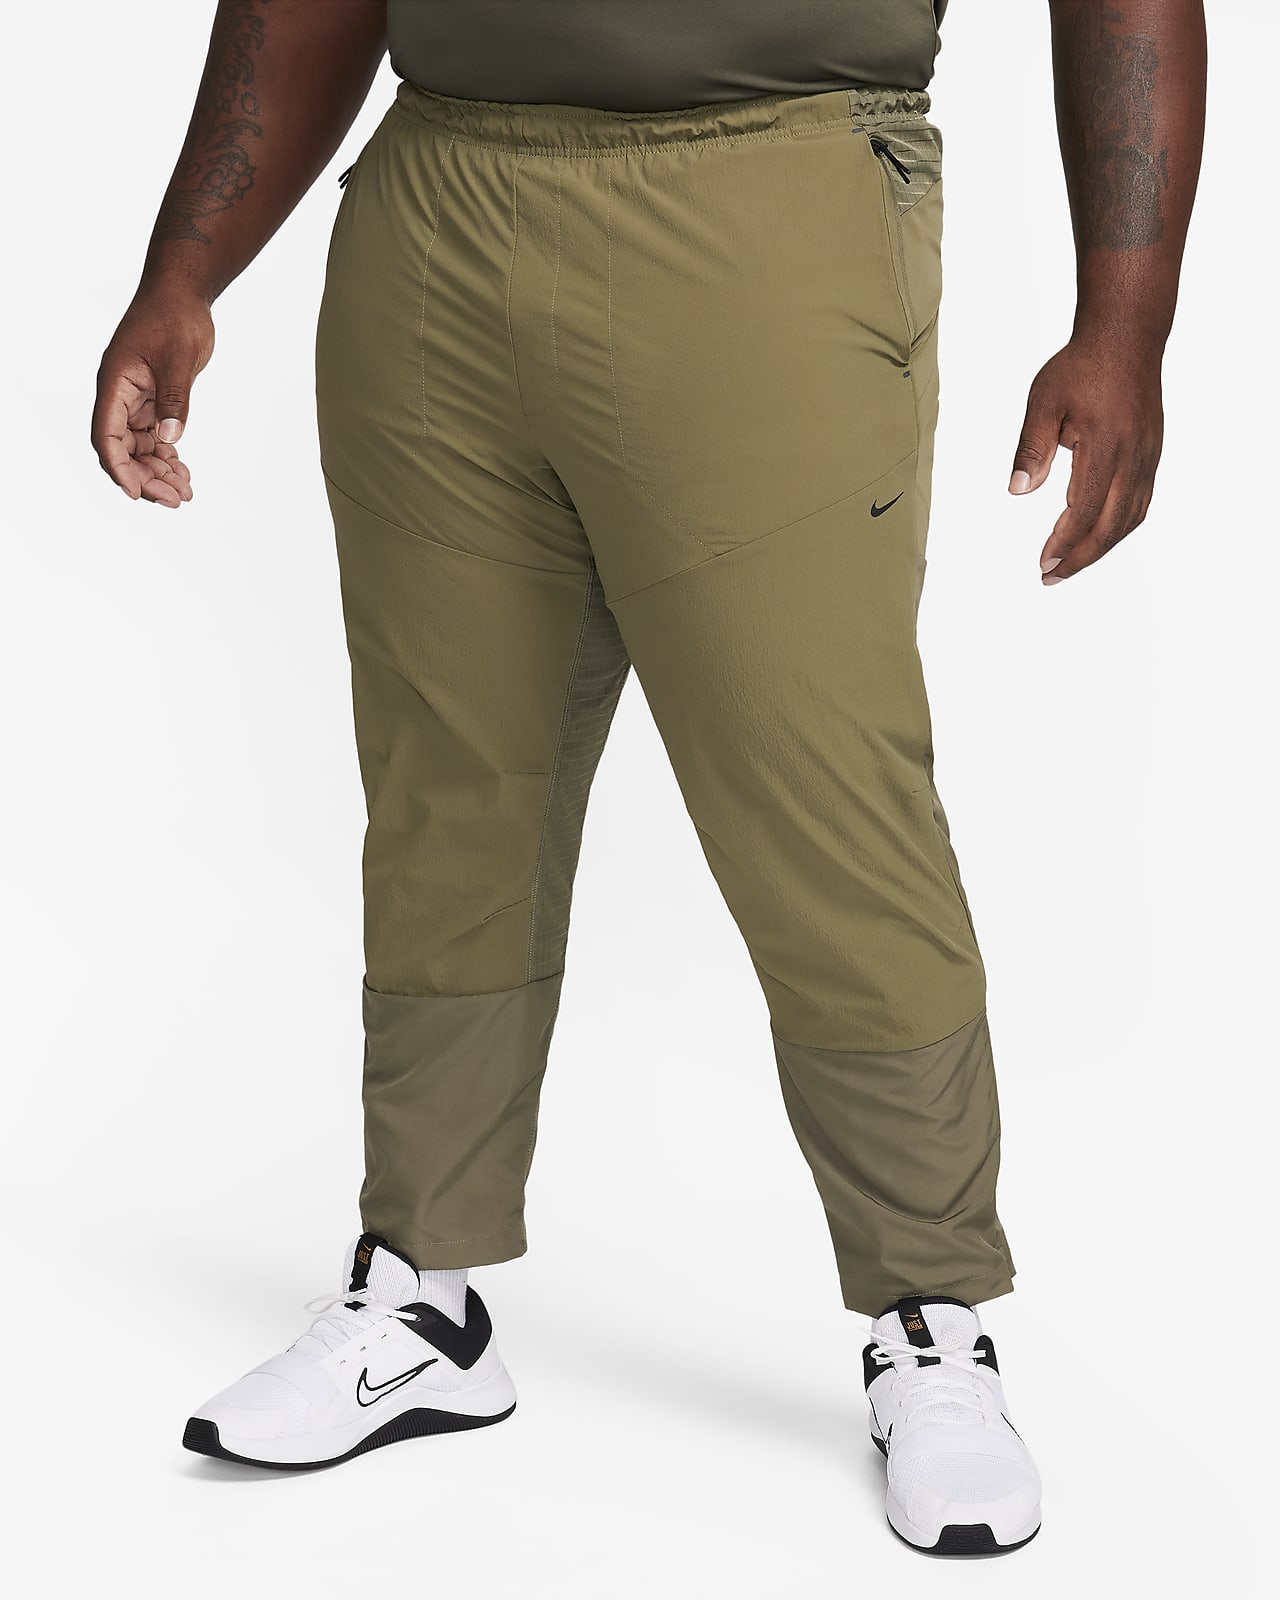 Dri-FIT Nike Pants. Versatile Woven A.P.S. ADV Men\'s